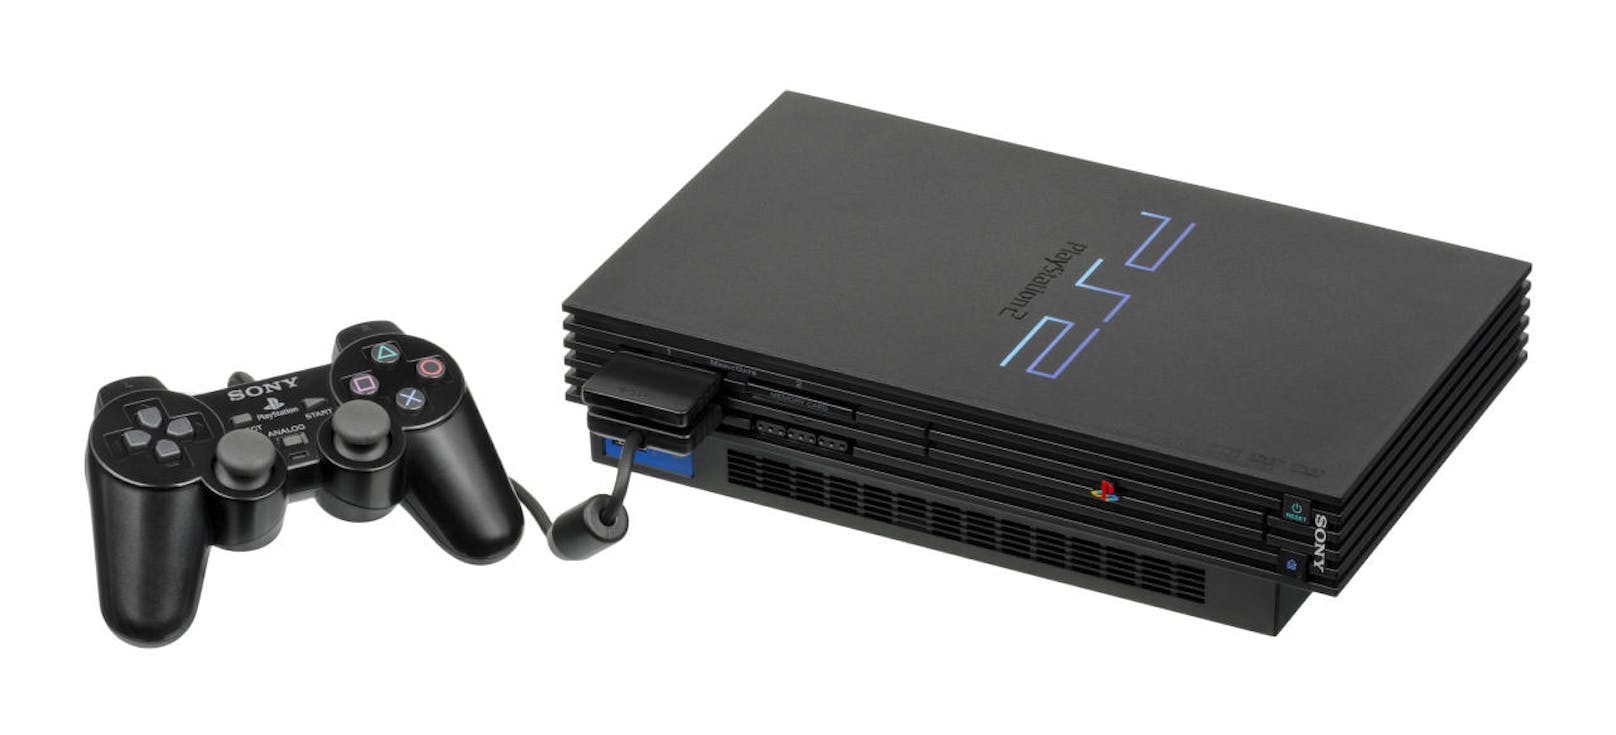 Die 2000 vorgestellte PlayStation 2 ist an den Verkaufszahlen gemessen die erfolgreichste Heimkonsole aller Zeiten.